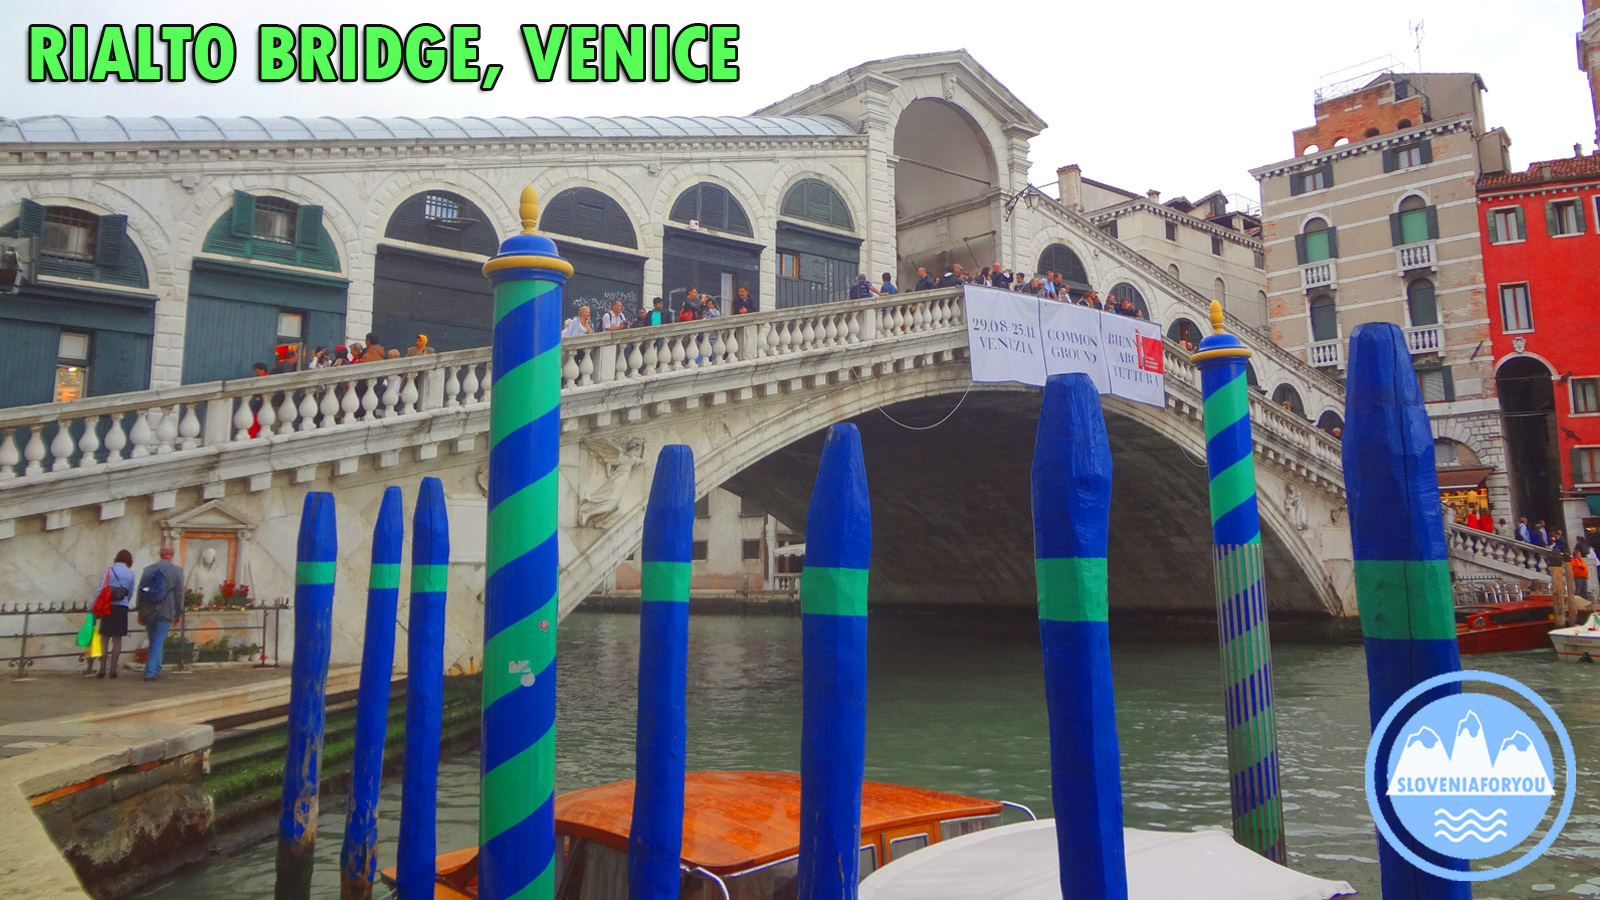 Rialto Bridge, Venice, Sloveniaforyou